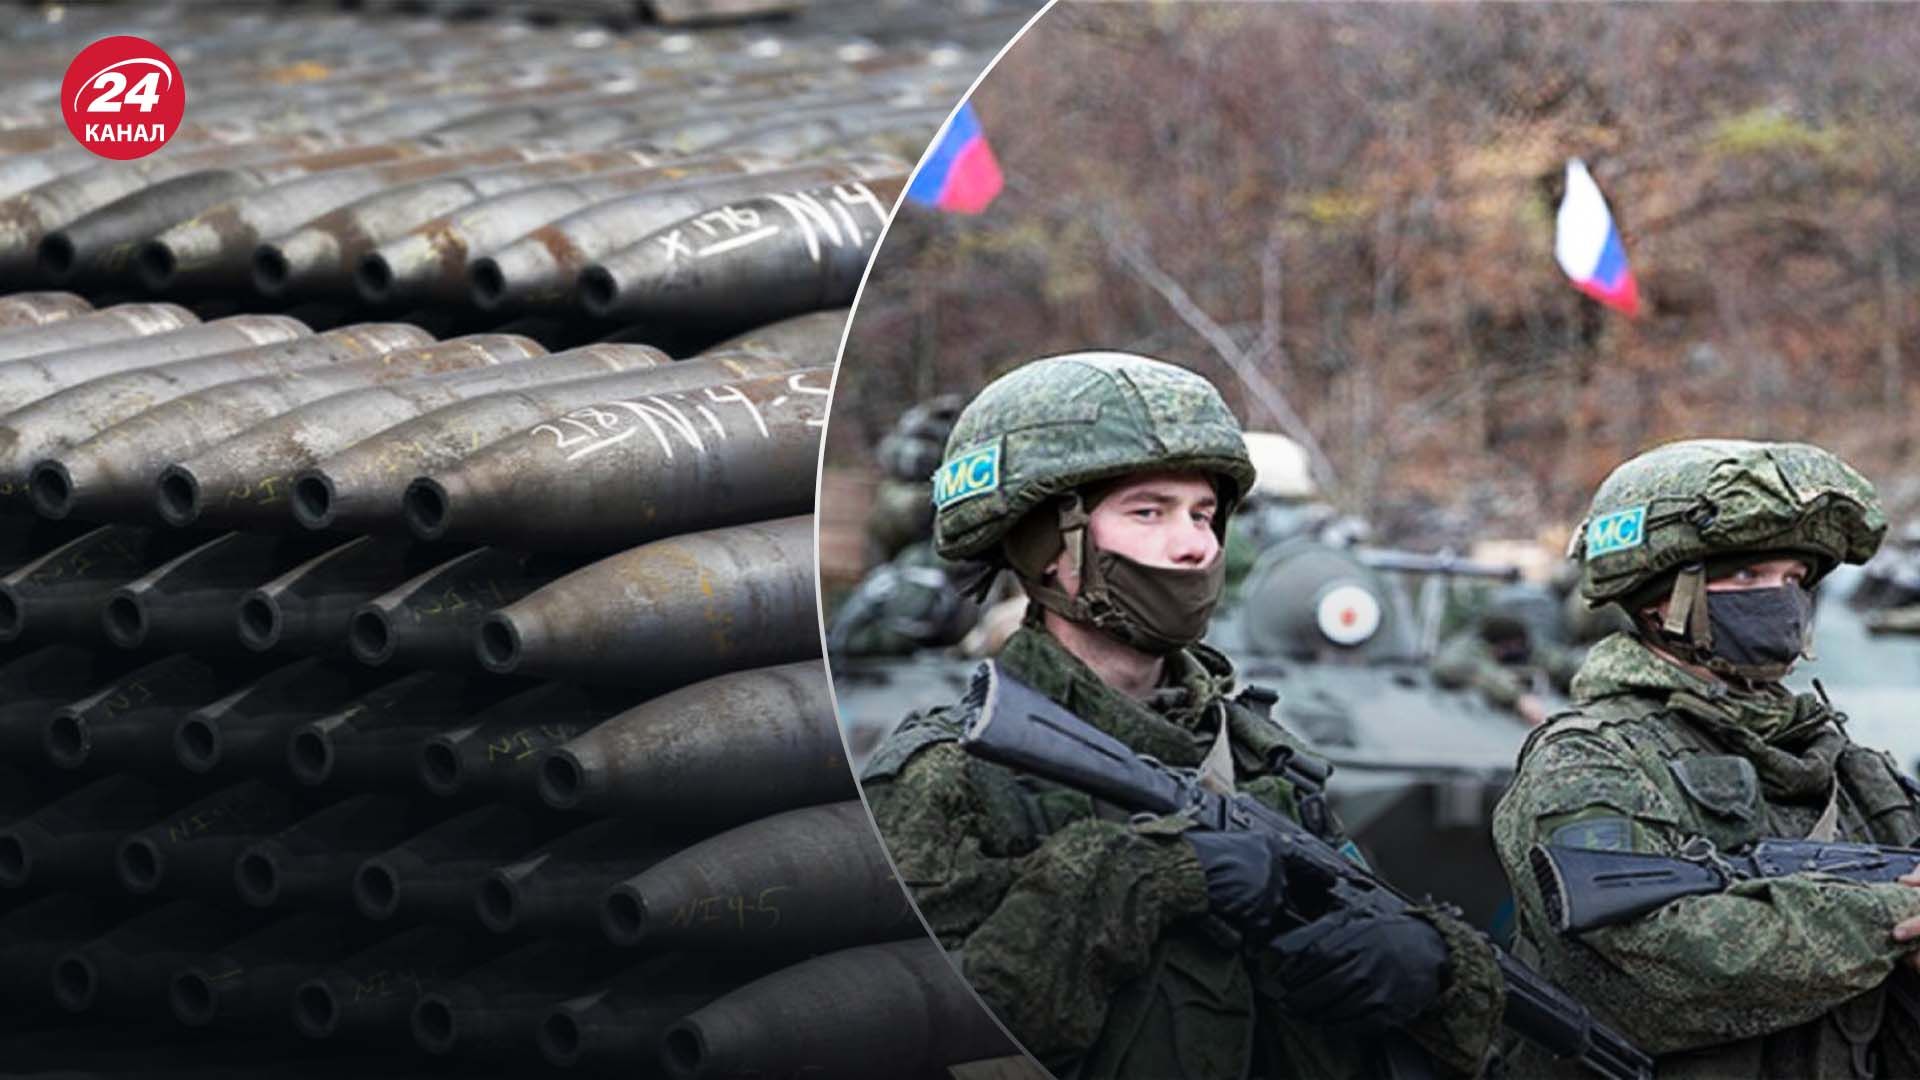 Проблеми росіян зі снарядами - що не так з північнокорейськими боєприпасами - 24 Канал